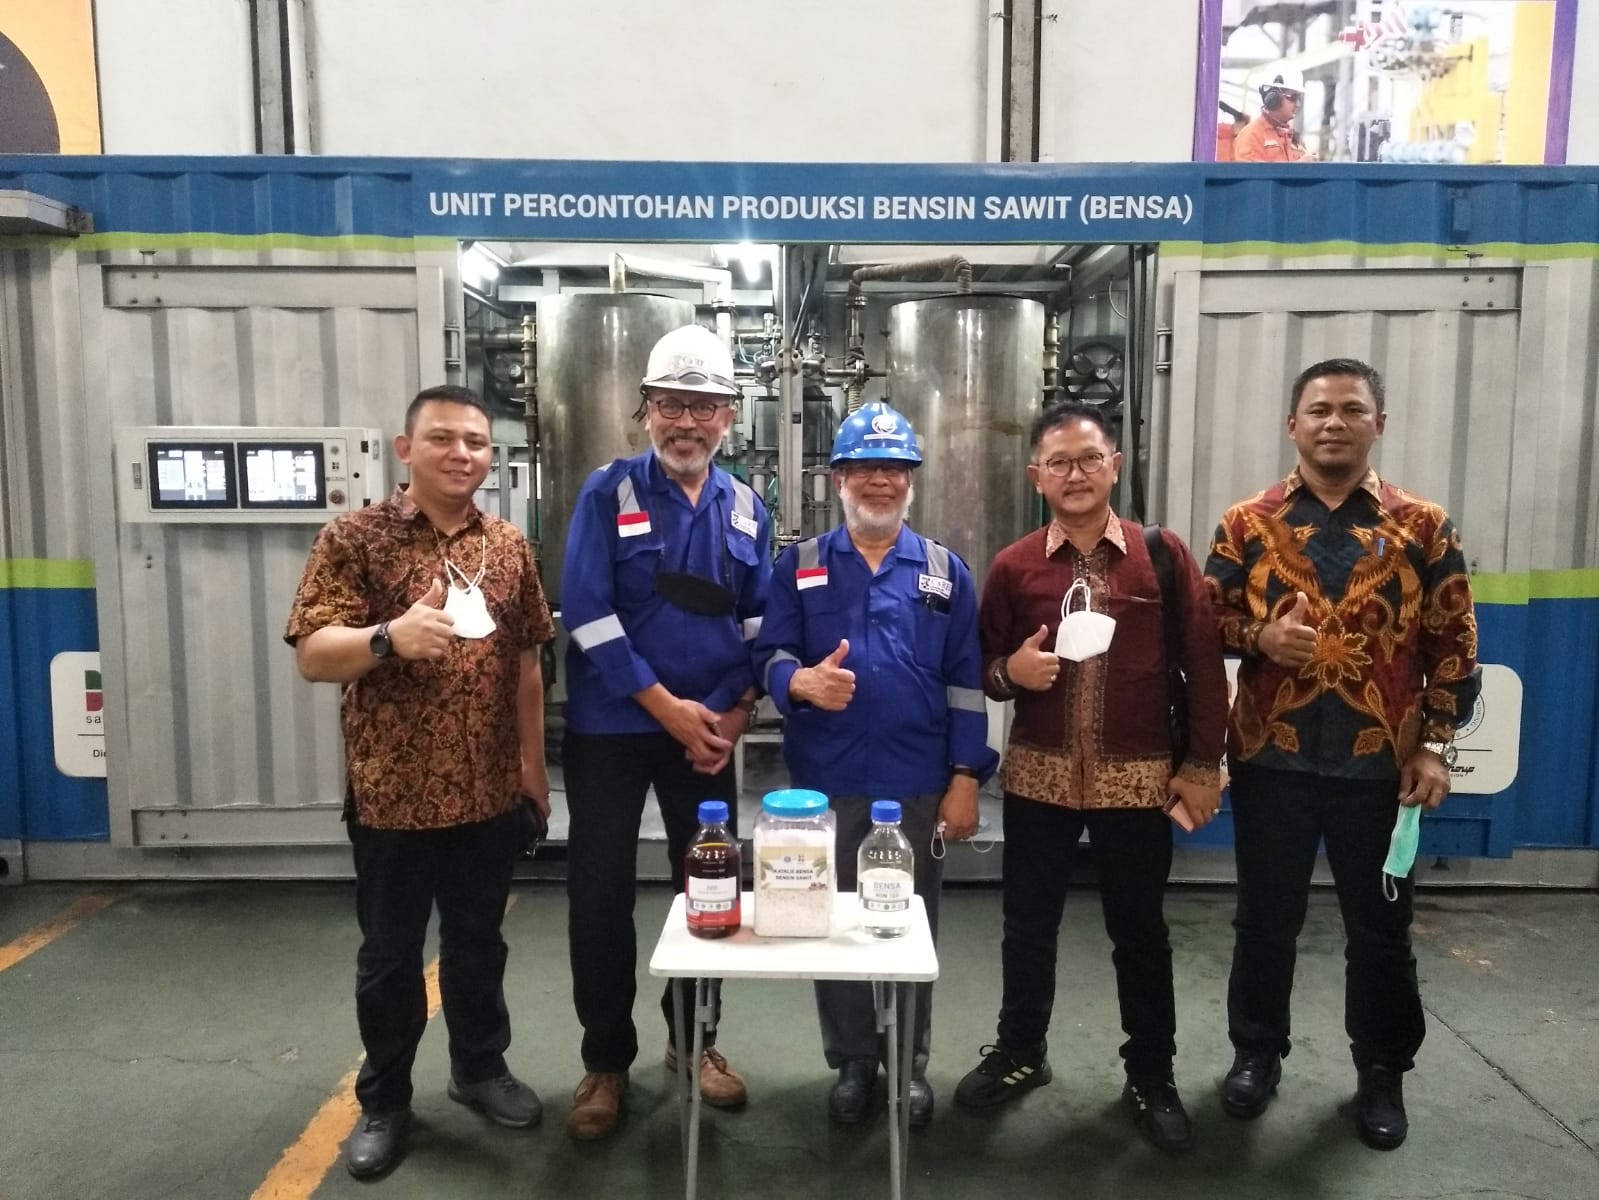 Sawit Muba Support Realisasi BENSA untuk Indonesia